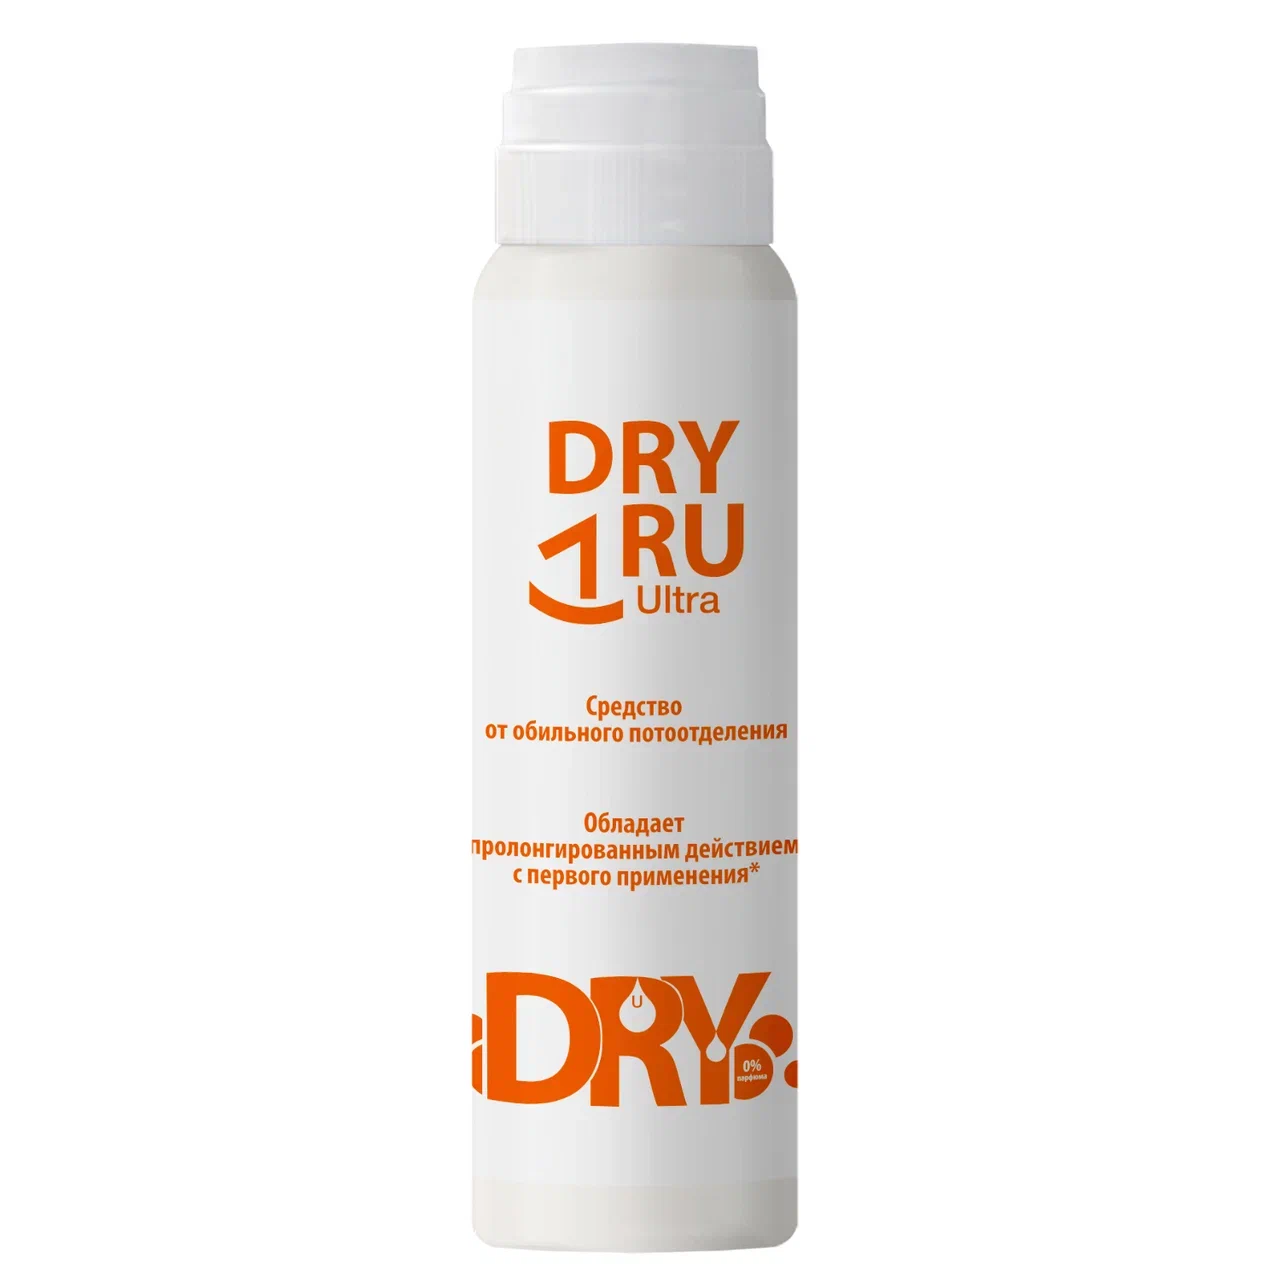 Дезодорант DRY RU Ультра от обильного потоотделения, с пролонгированным действием 50 мл дезодорант dry dry roll on от обильного потоотделения 35 мл